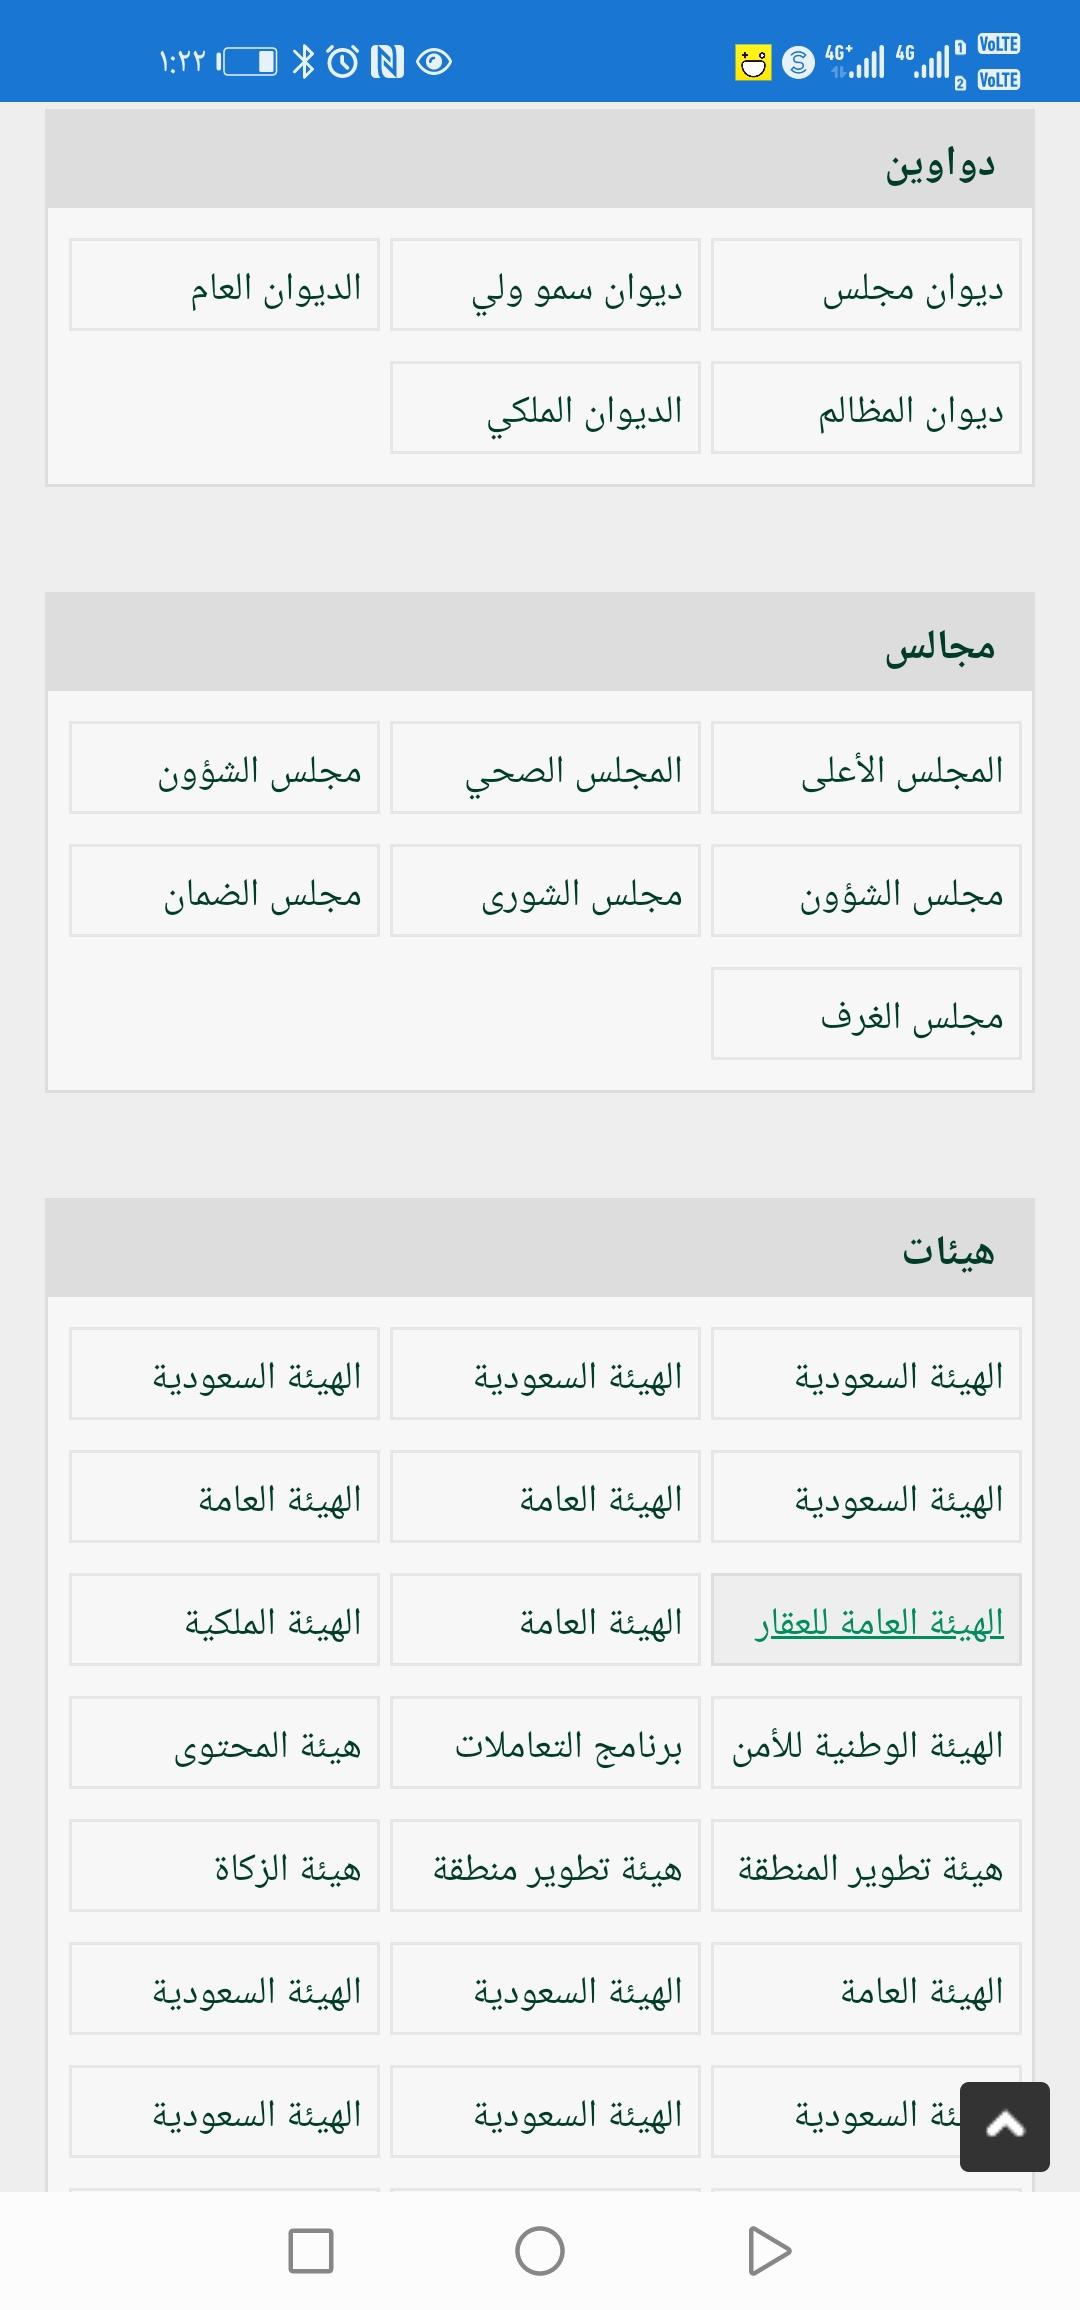 مواقع حكومية:دليل المواقع السعودية for Android - APK Download